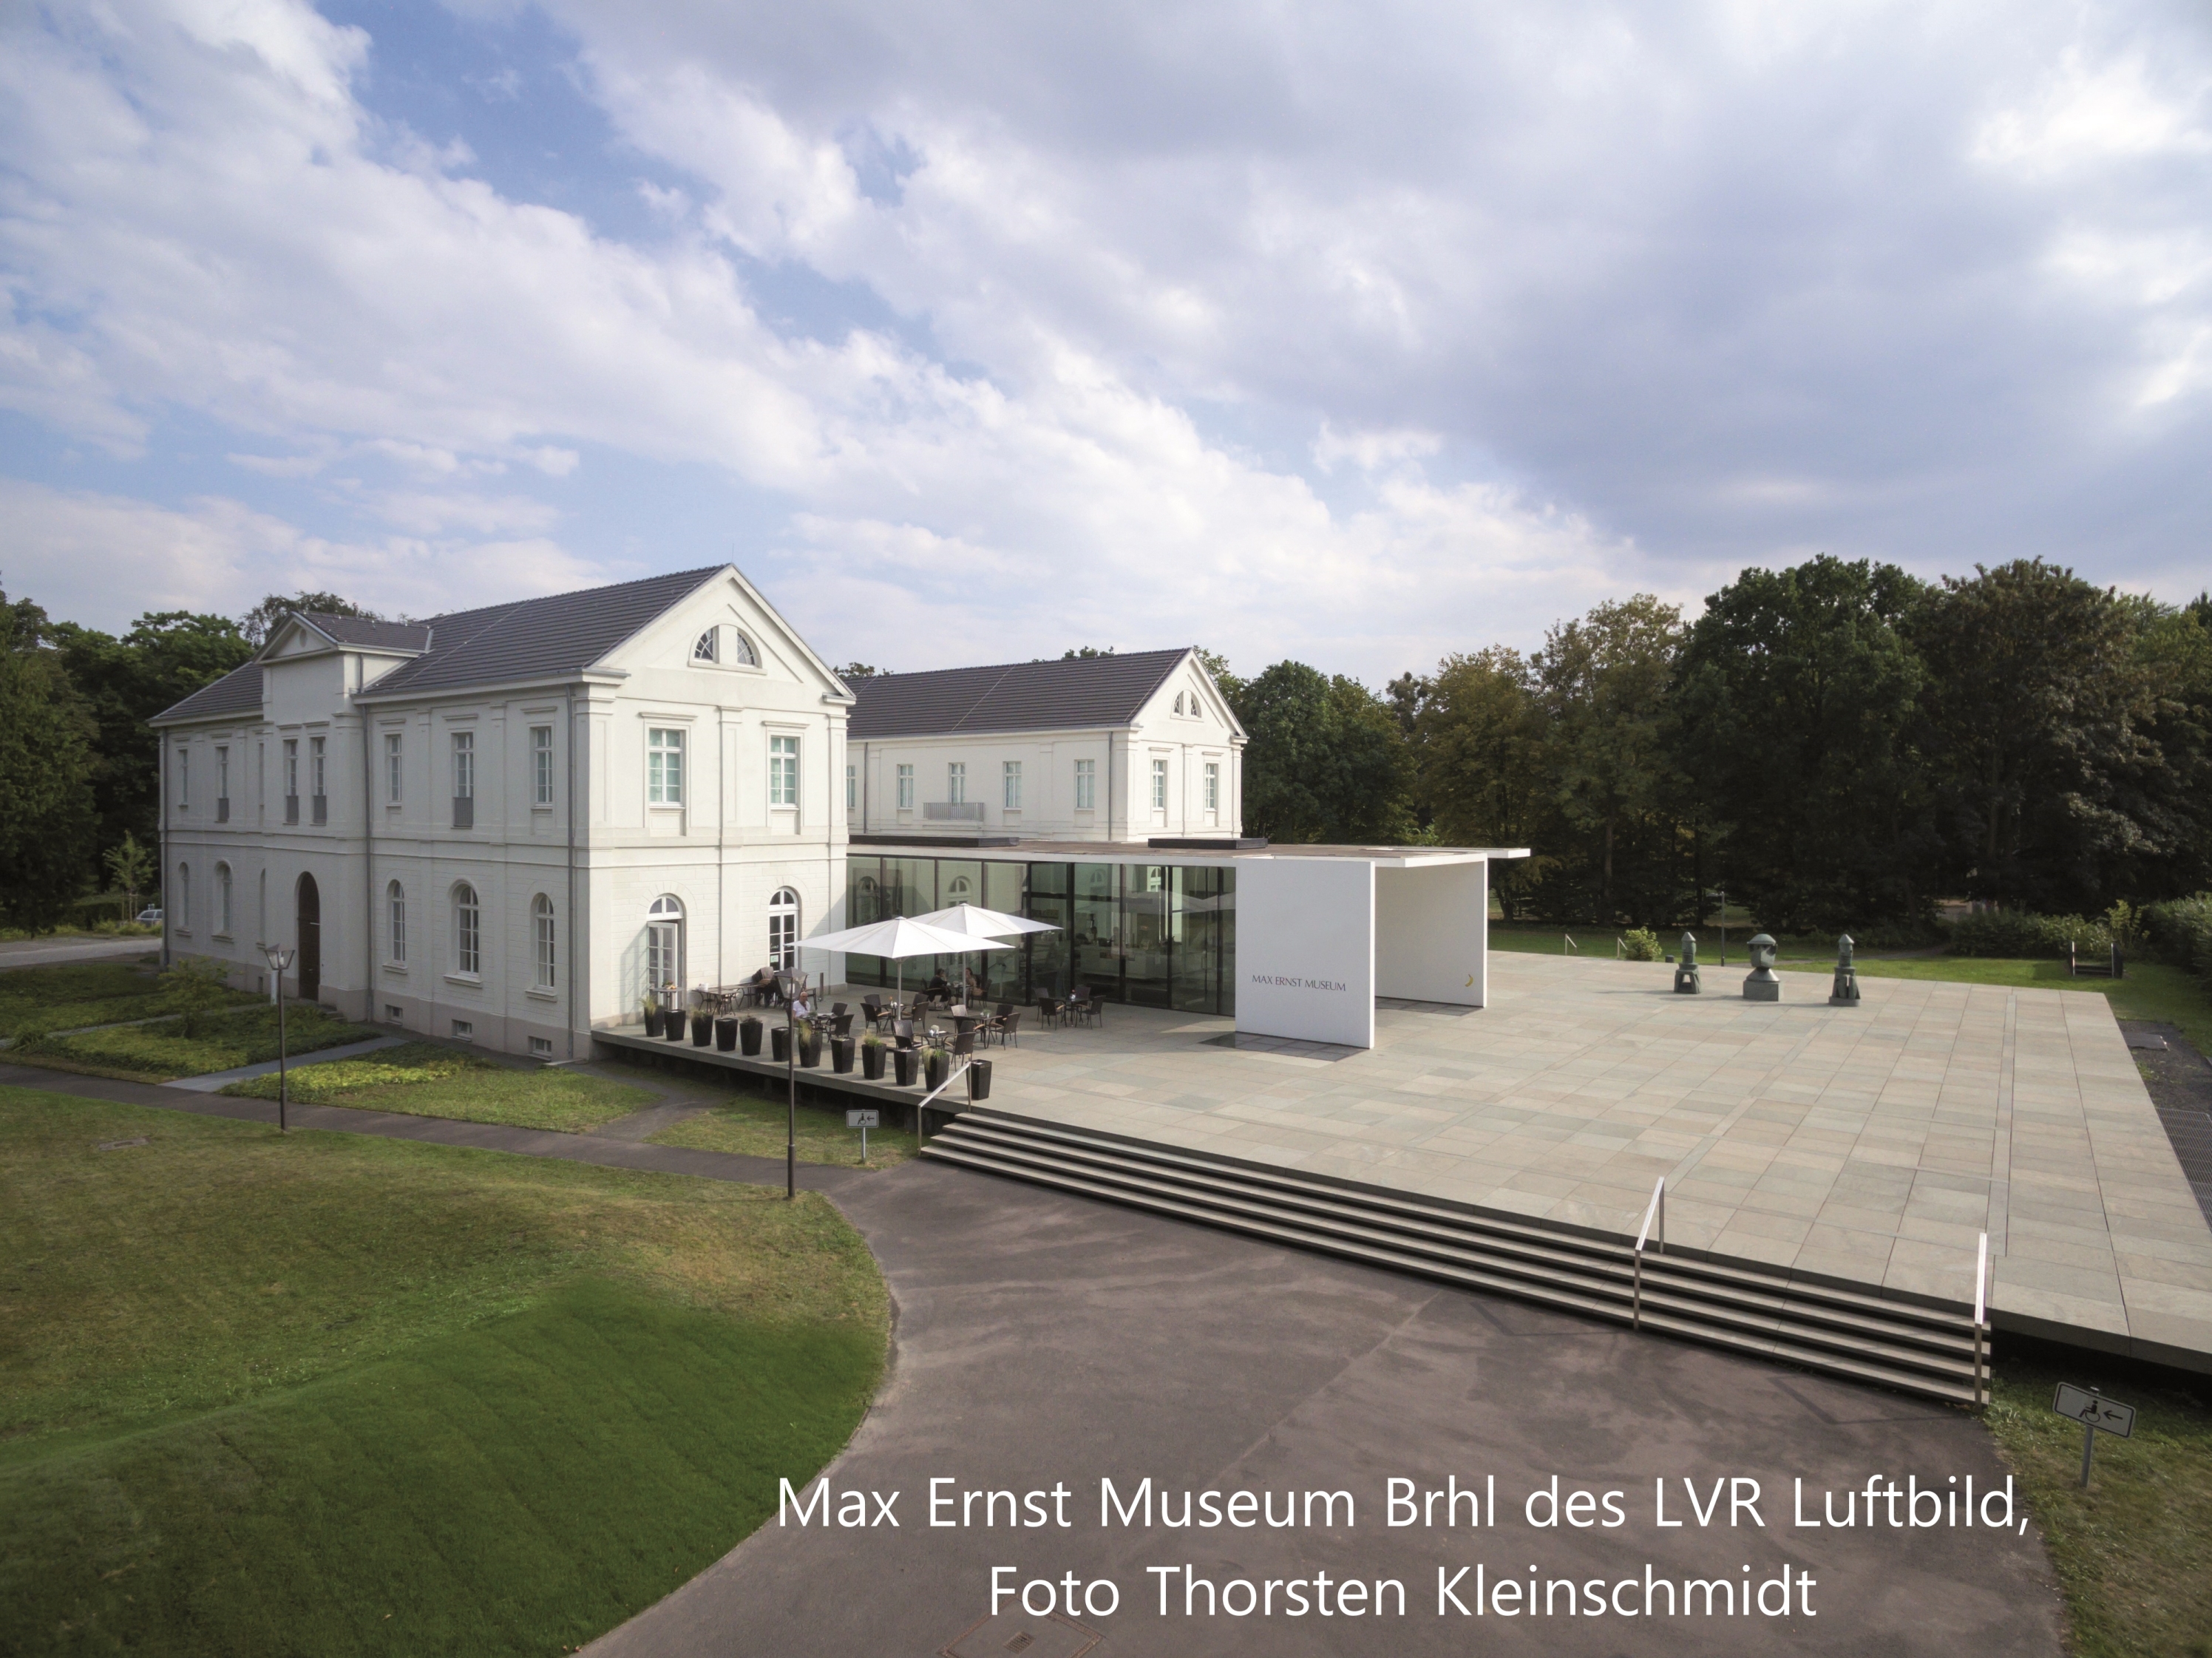 01-Max_Ernst_Museum_Brhl_des_LVR_Luftbild_Foto_Thorsten_Kleinschmidt.jpg